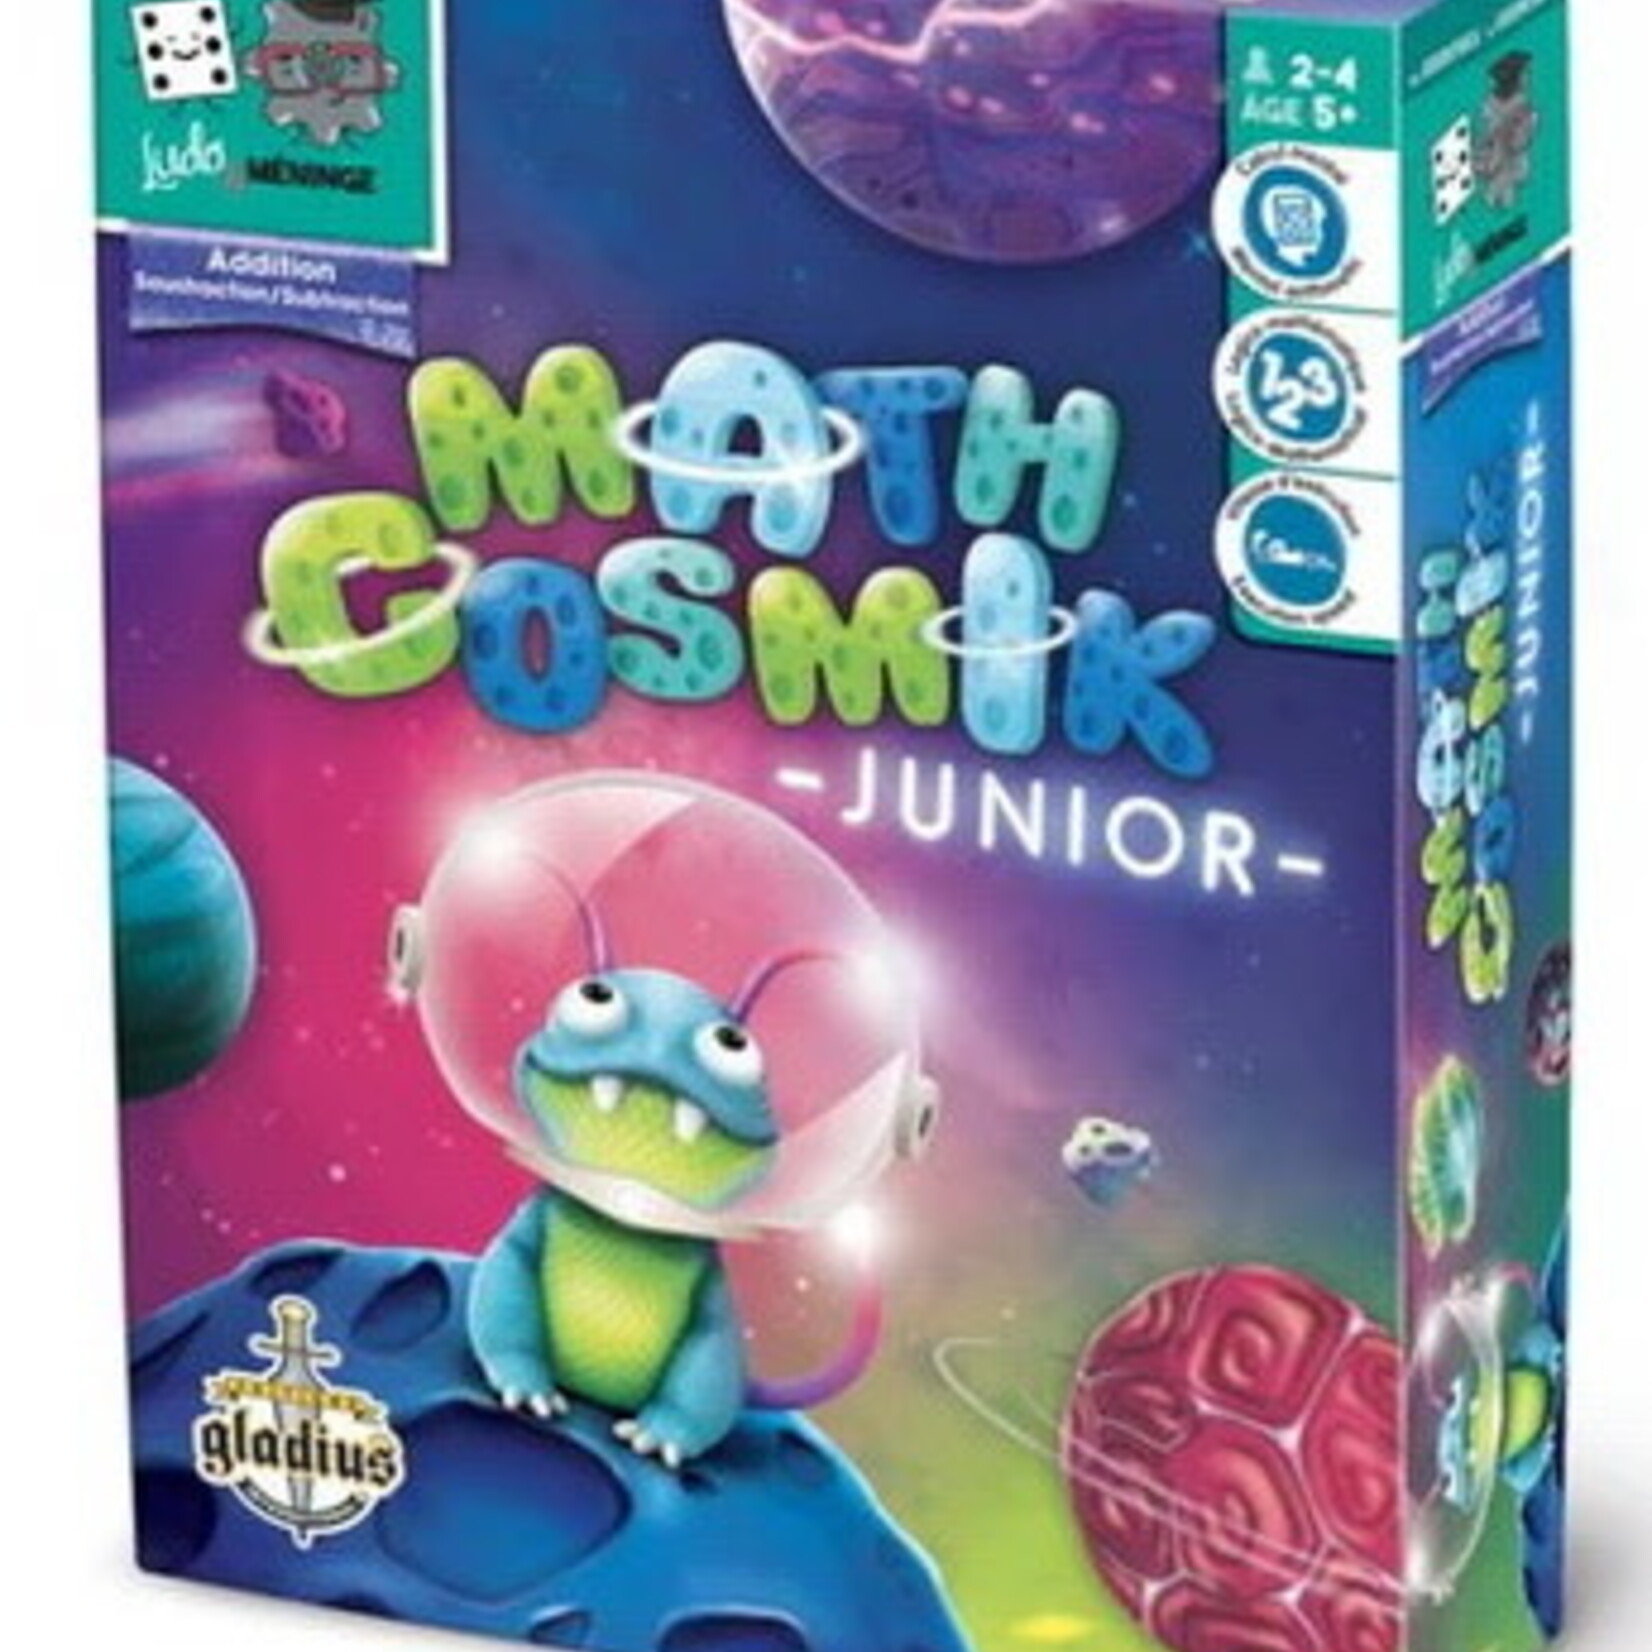 Gladius Math Cosmik Junior